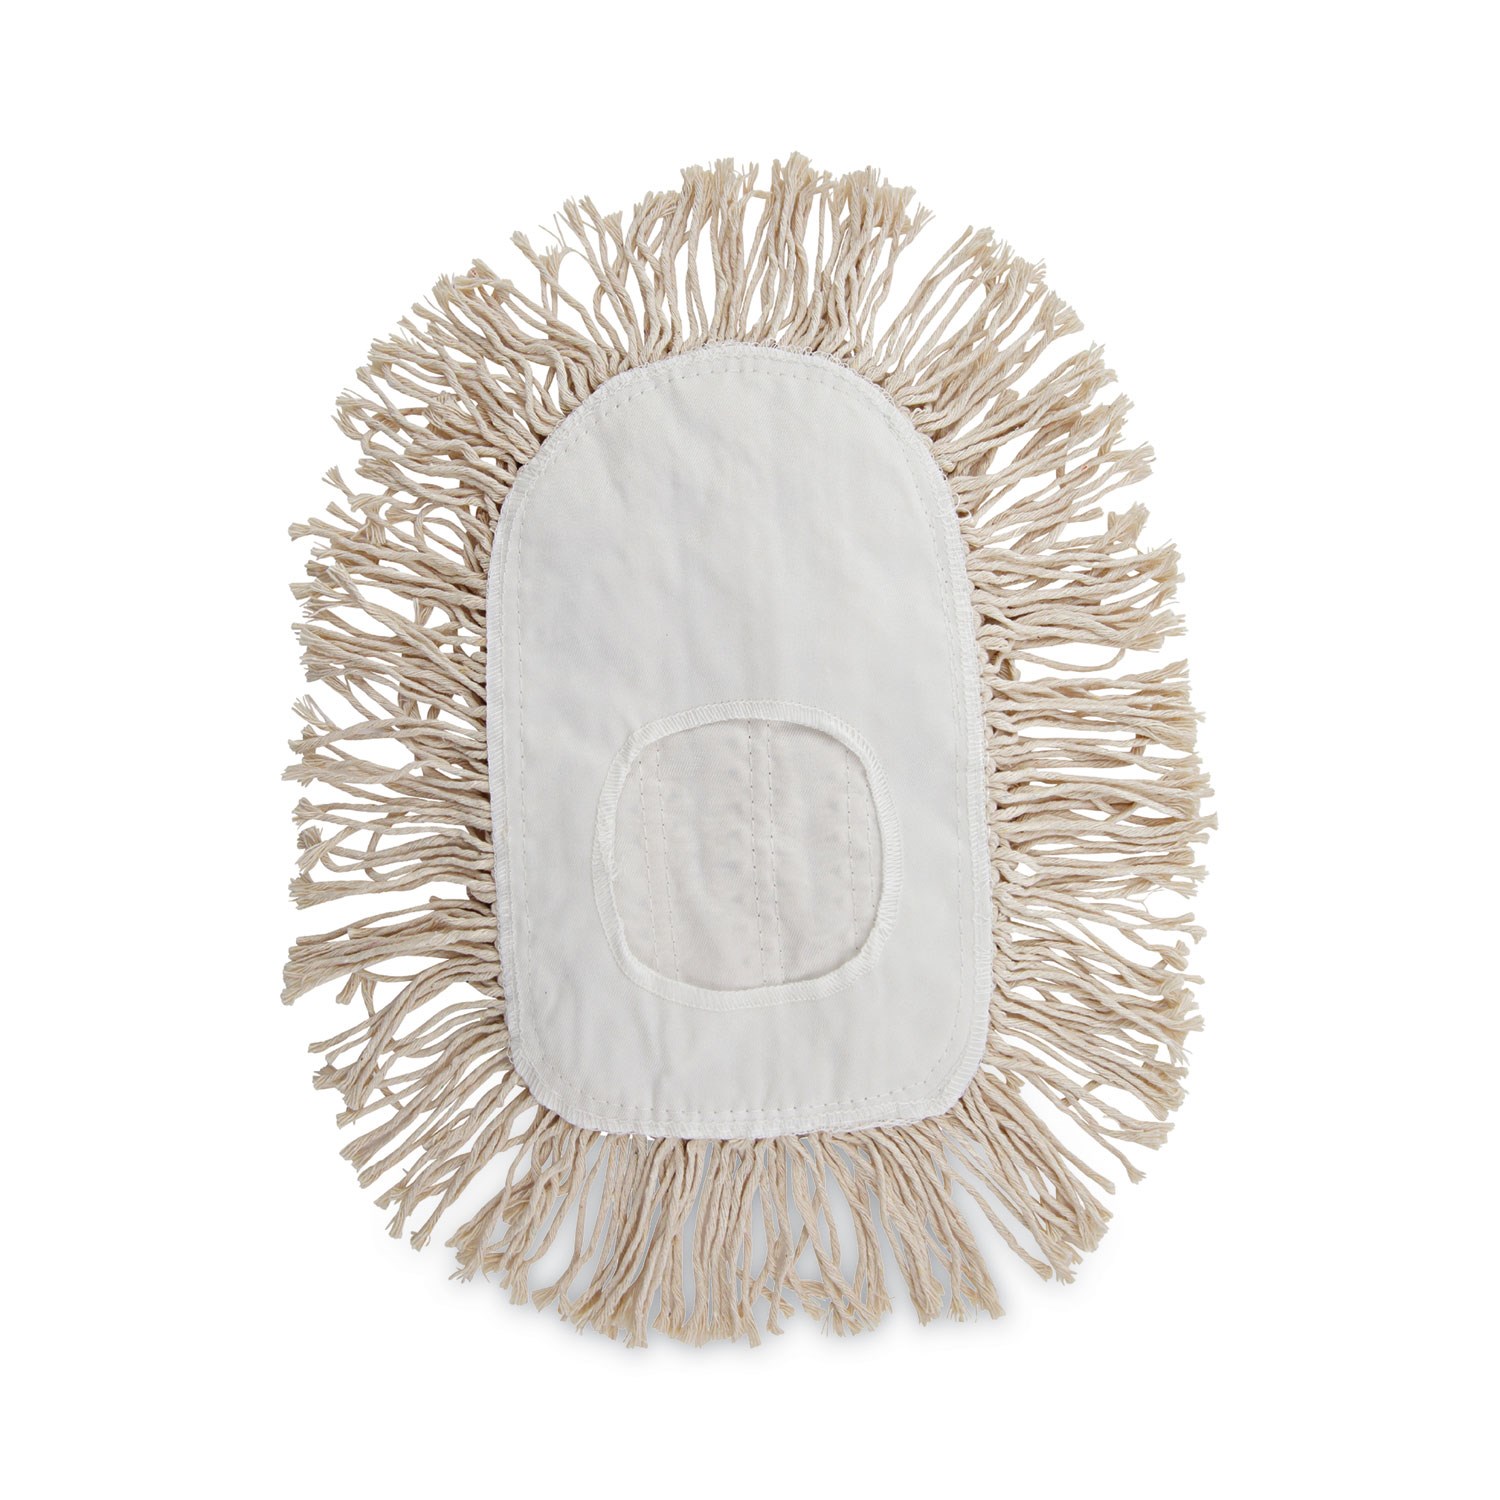 Boardwalk Wedge Dust MOP Head Cotton 17 1/2l X 13 1/2w White 1491 for sale online 